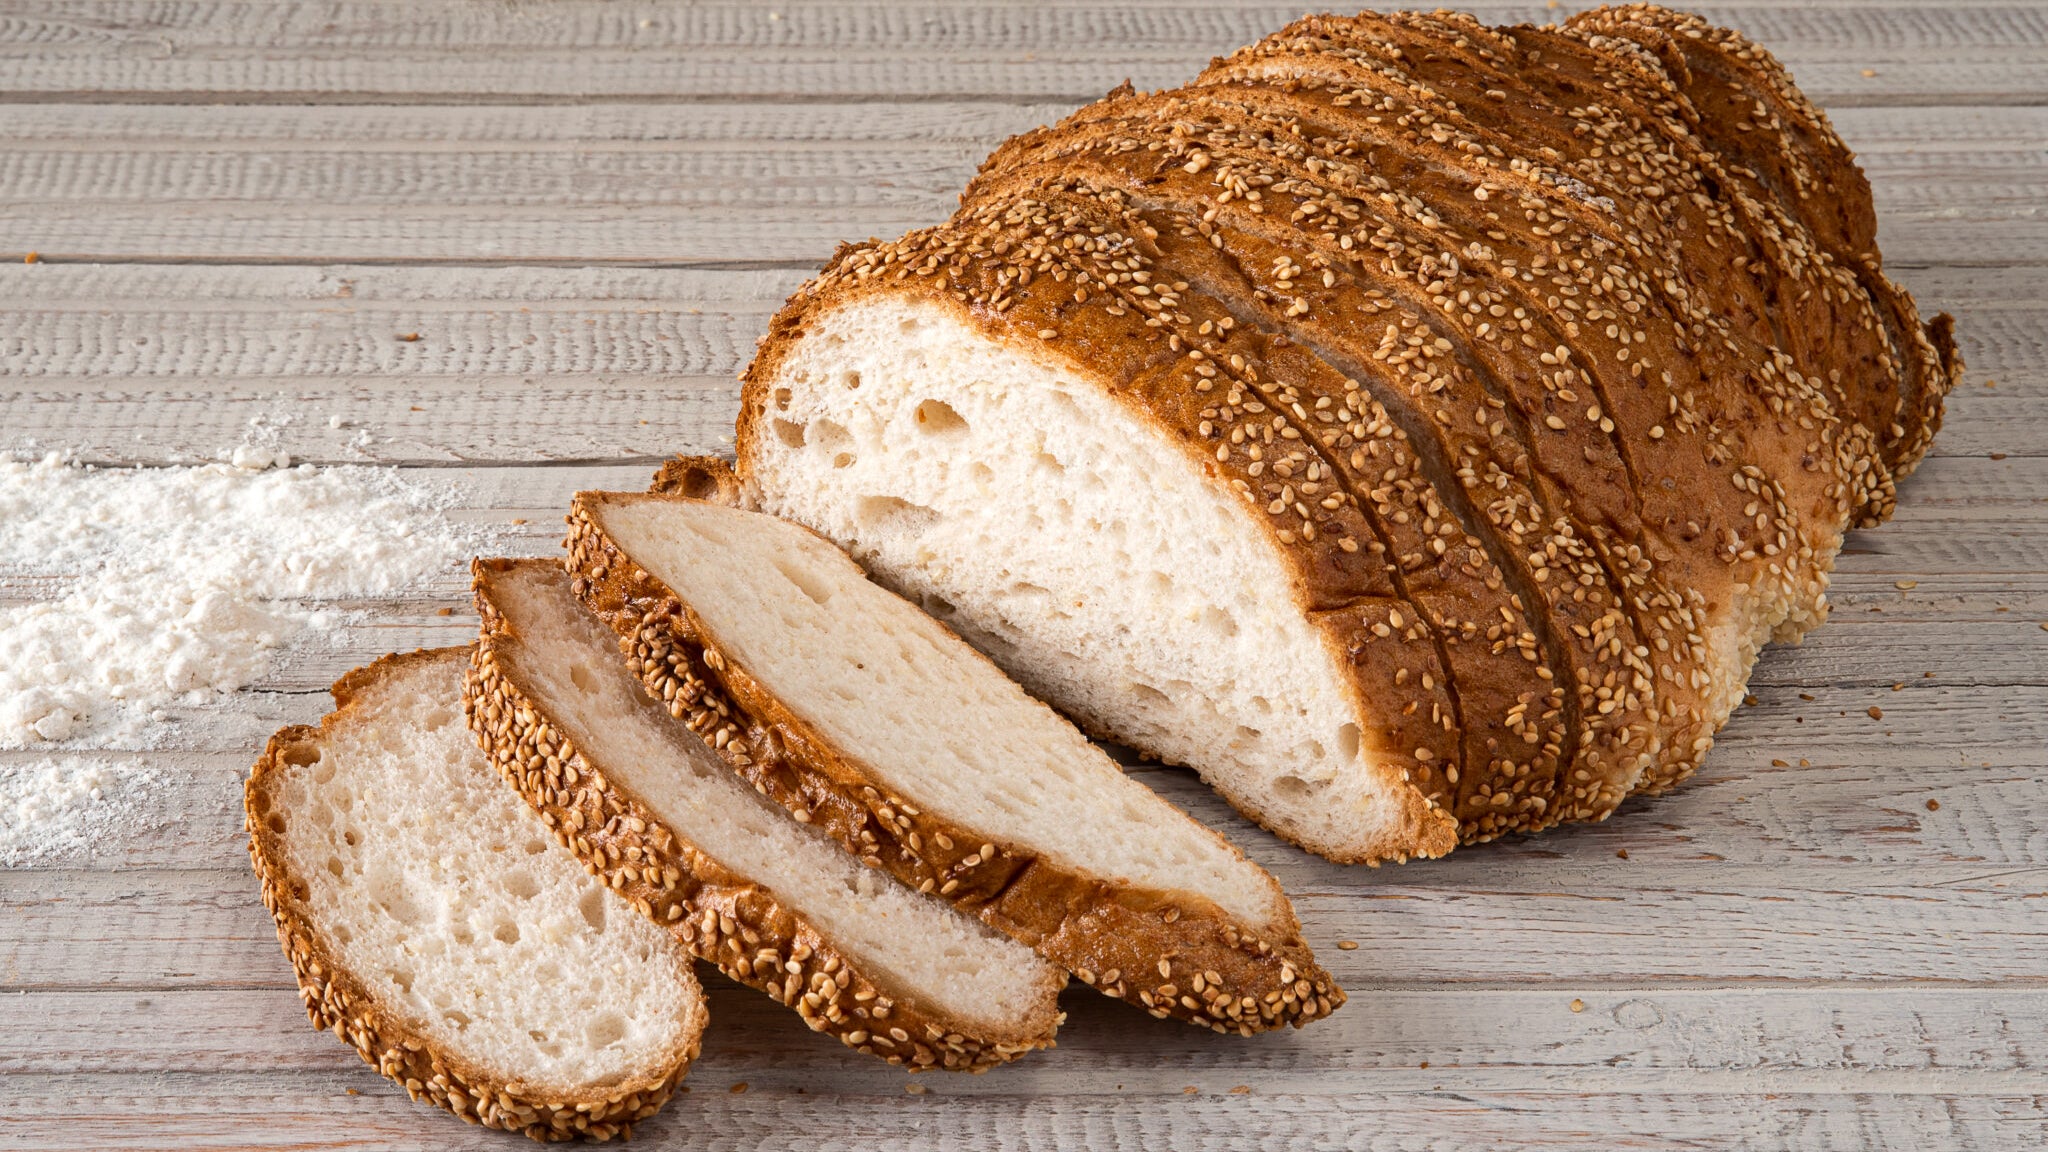 לחם לבן בתבנית ללא לישה בלי גלוטן מקמח תמי למאפי שמרים